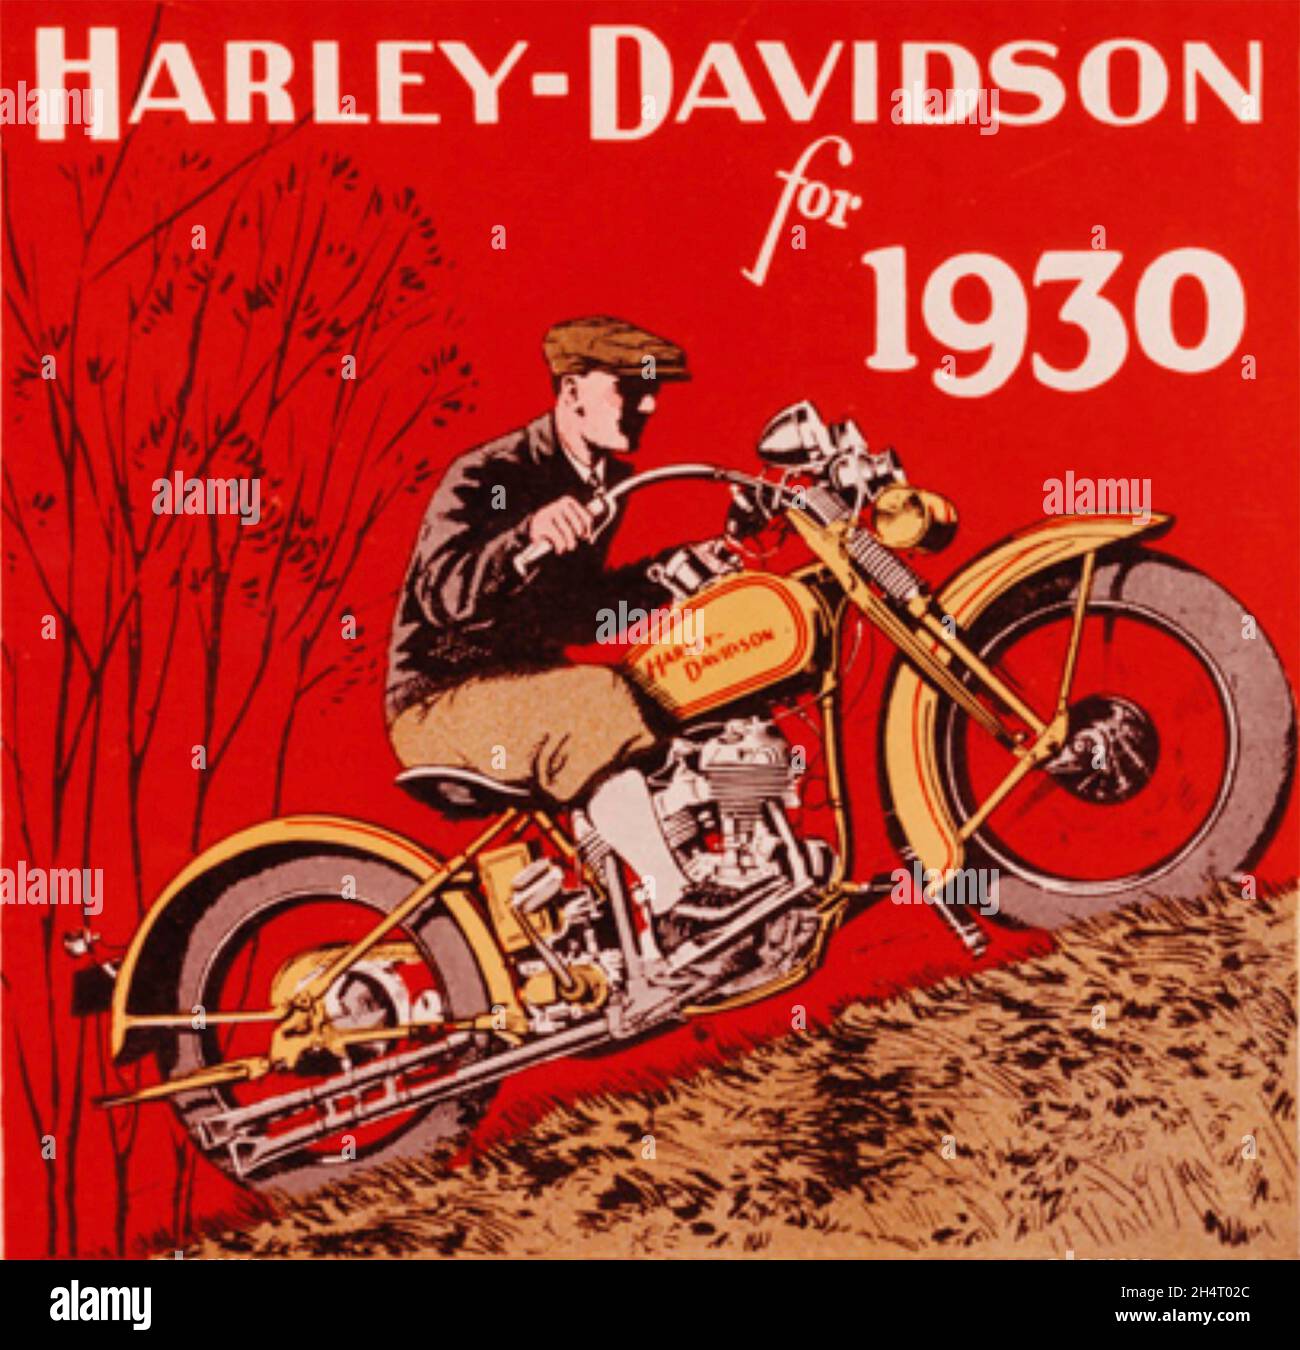 HARLEY-DAVIDSON produttore americano di motociclette. Un poster del 1930.; Foto Stock